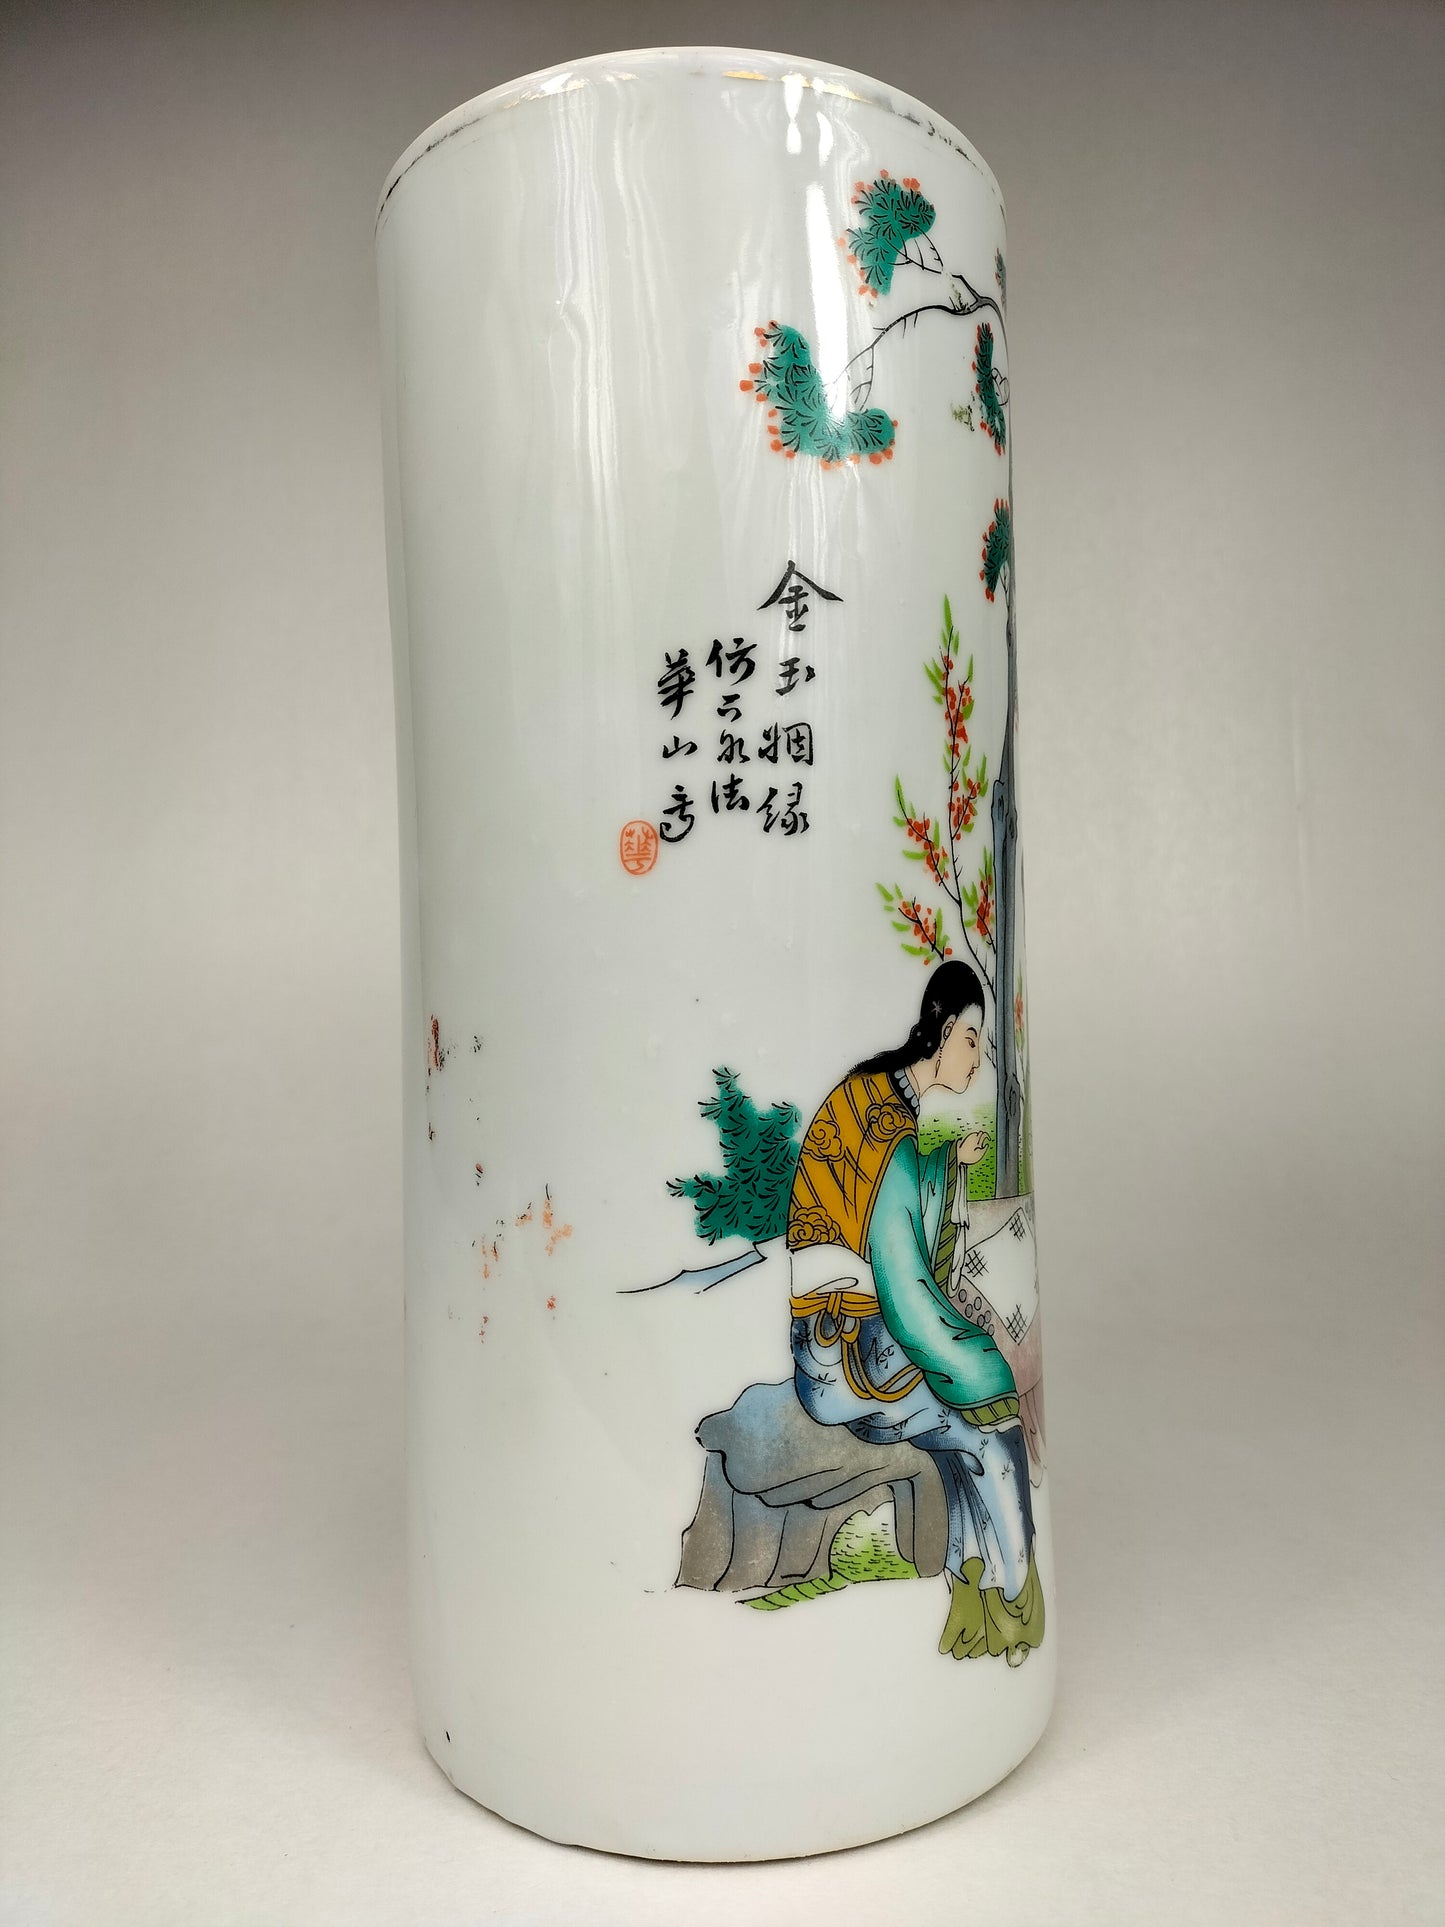 Chiếc bình rouleau cổ của Trung Quốc được trang trí với cảnh vườn // Thời kỳ Cộng hòa (1912-1949)